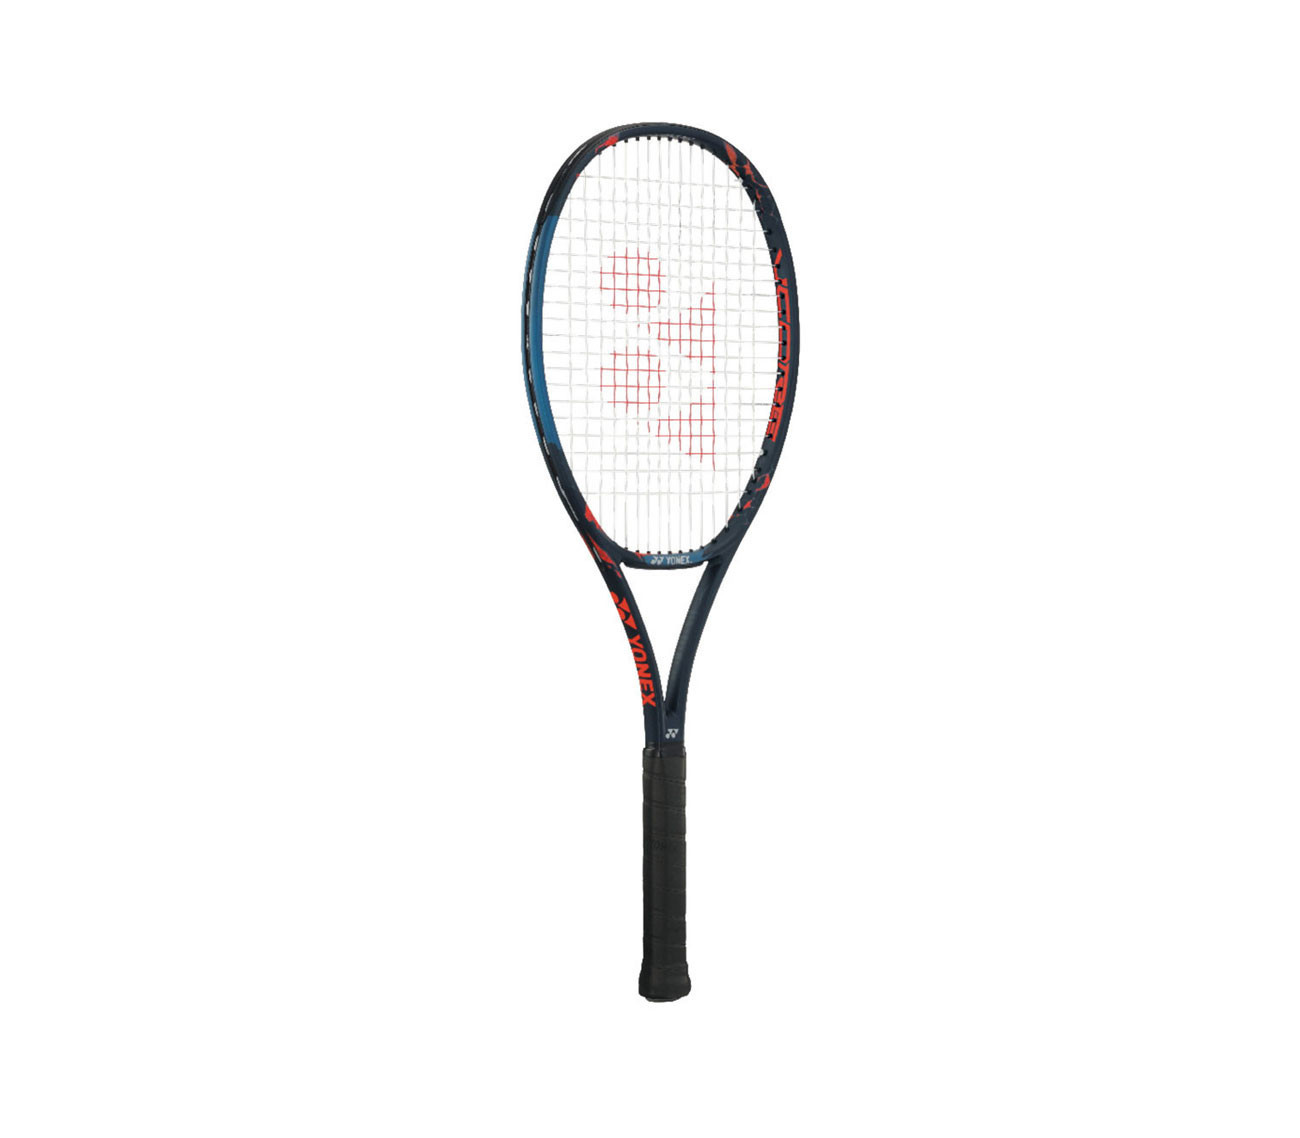 Raquette de tennis Yonex Vcore Pro 100 alpha LG